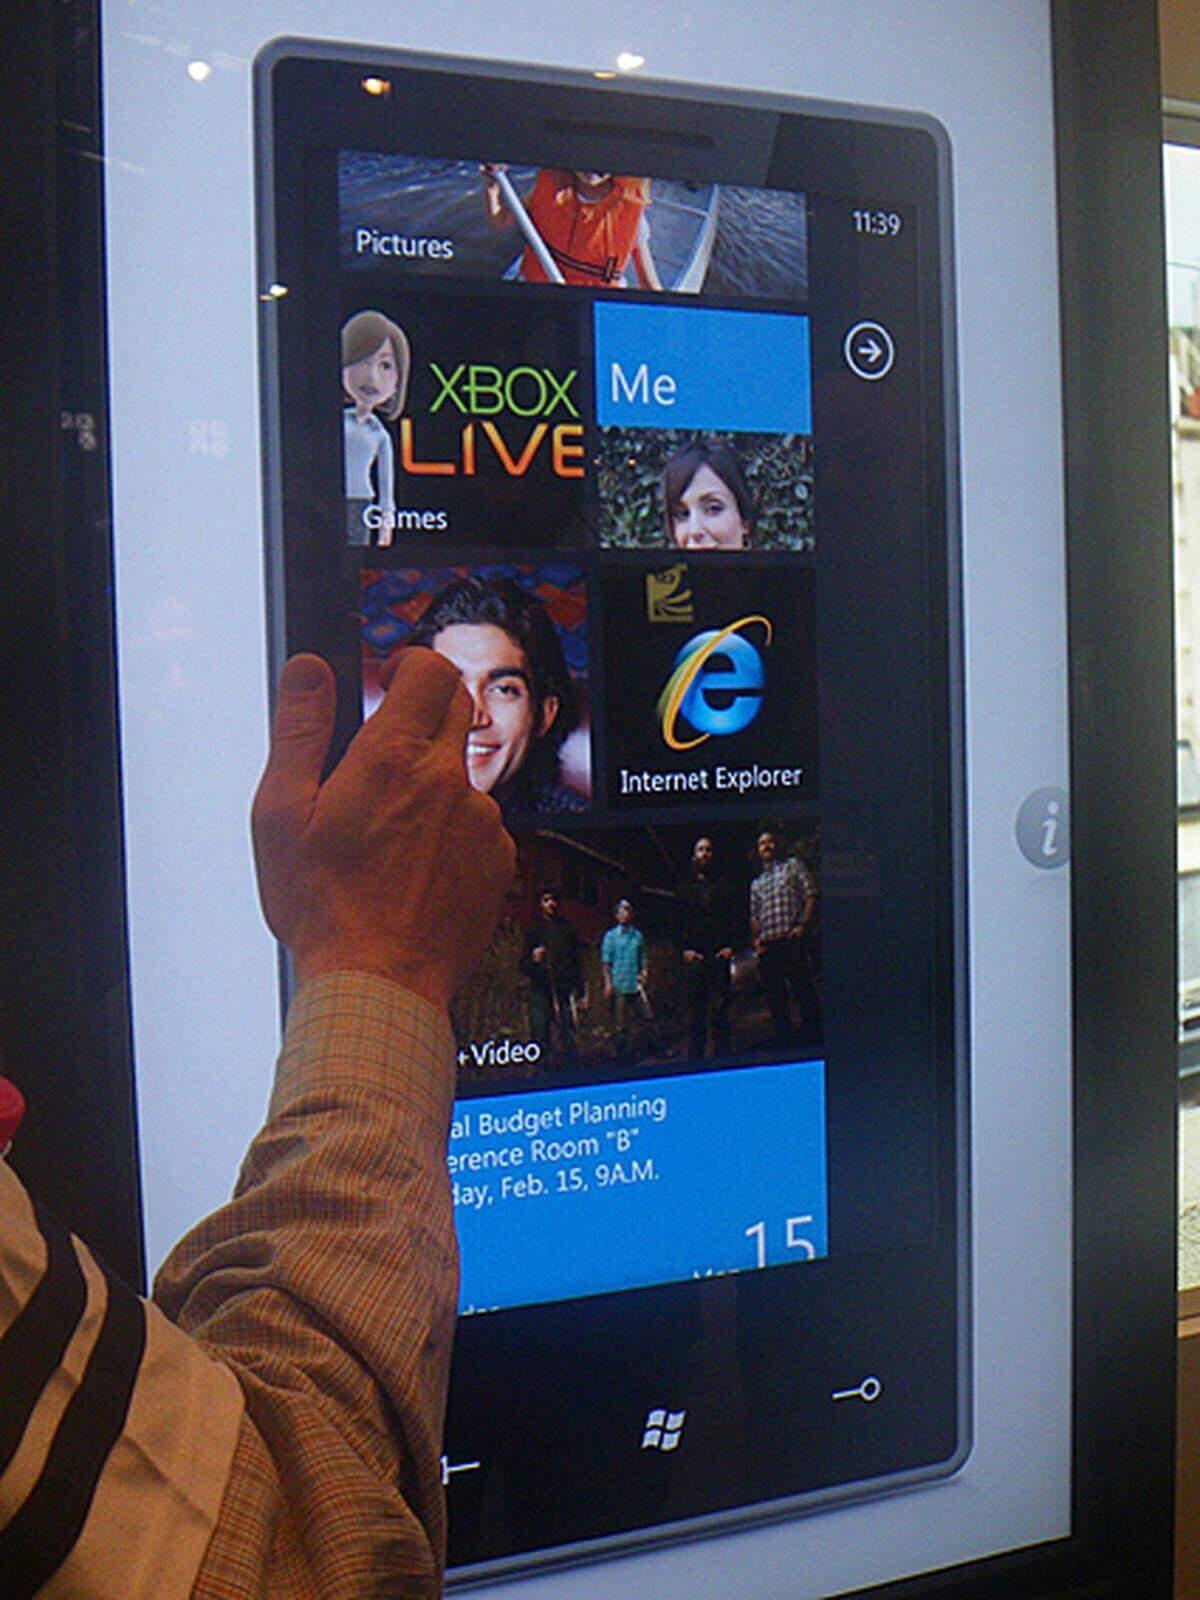 Jahre hat Microsoft gebraucht um eine Antwort auf Apples iPhone zu formulieren. Und das Ergebnis kann sich sehen lassen. Das "Windows Phone 7 Series" ist schick, touchscreen-freundlich, vernetzt und auch ganz gut zu bedienen. DiePresse.com war bei einer Vorführung am Mobile World Congress in Barcelona und hat sich alle Funktionen zeigen lassen.